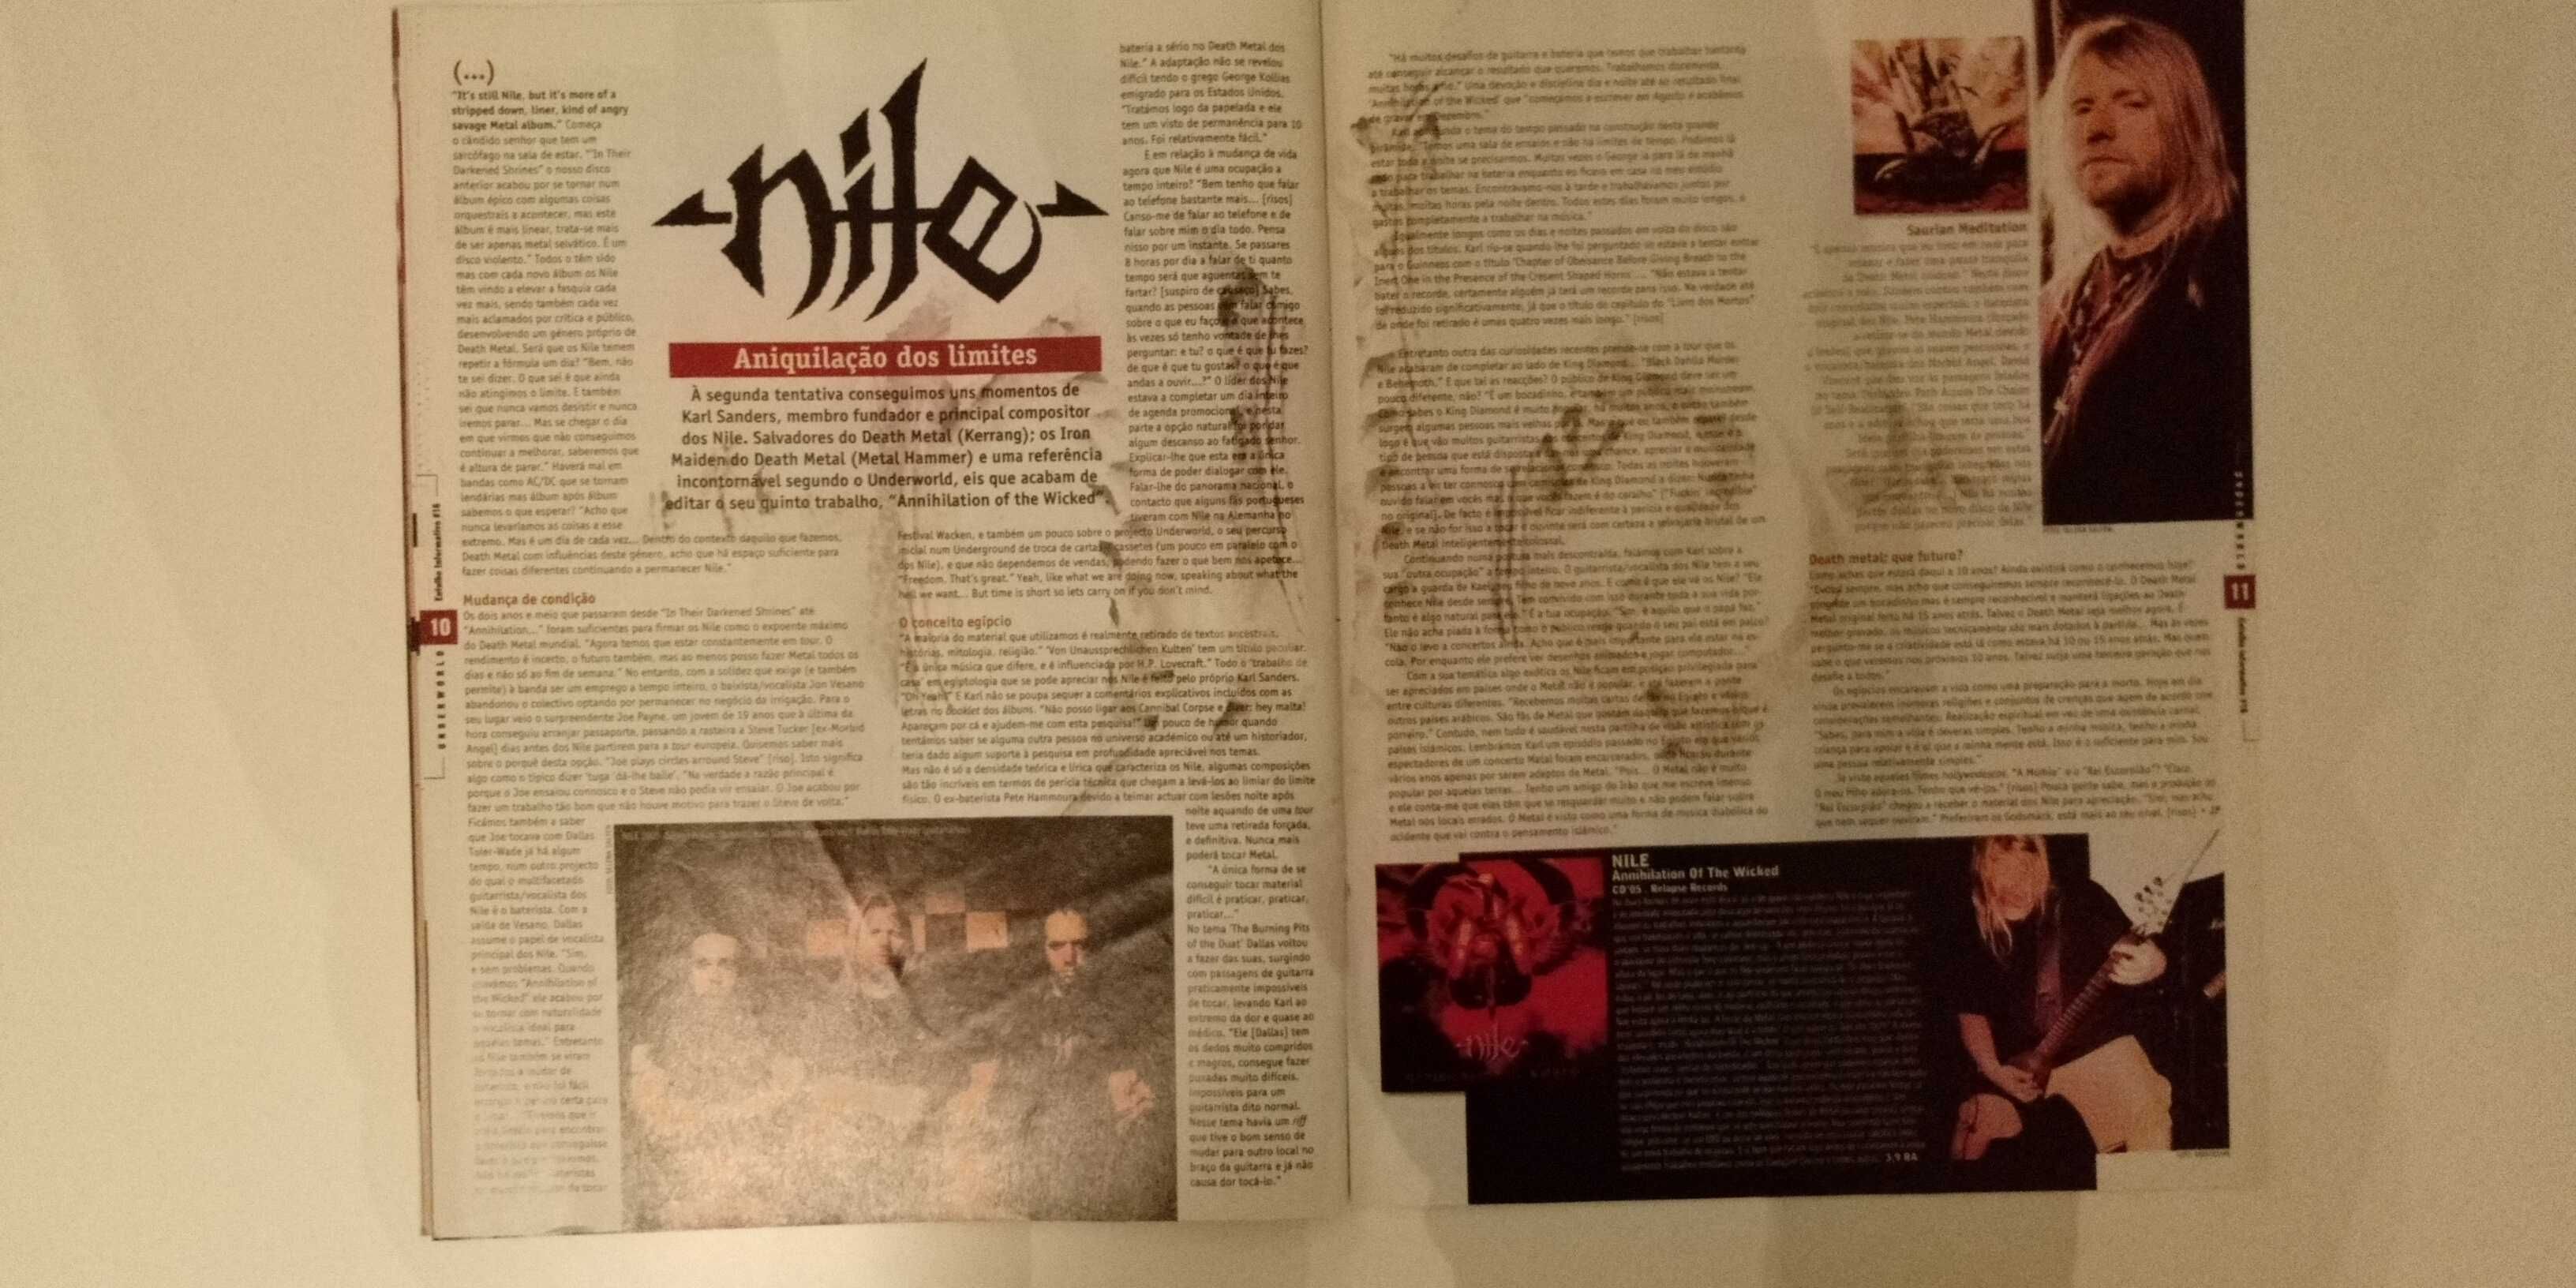 Underworld #16 #18 revistas Metal Rock Punk BD cinema arte literatura